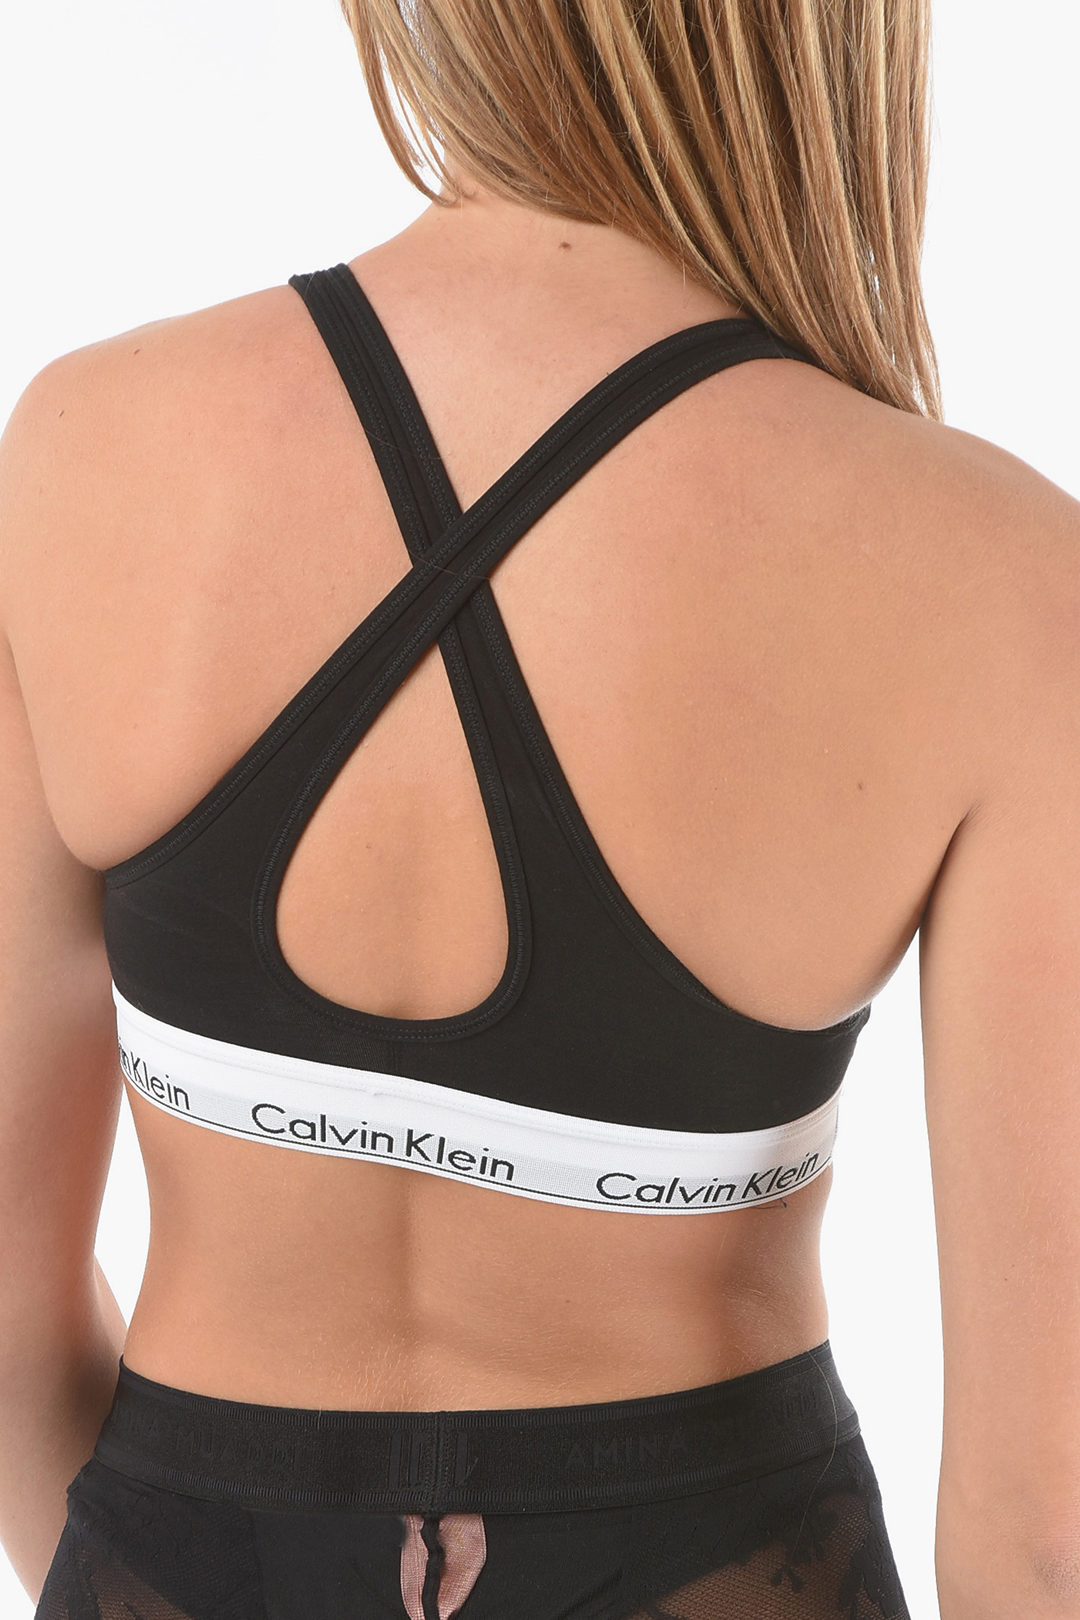 Calvin Klein Criss Cross Strap BRALETTE Padded Bra women - Glamood